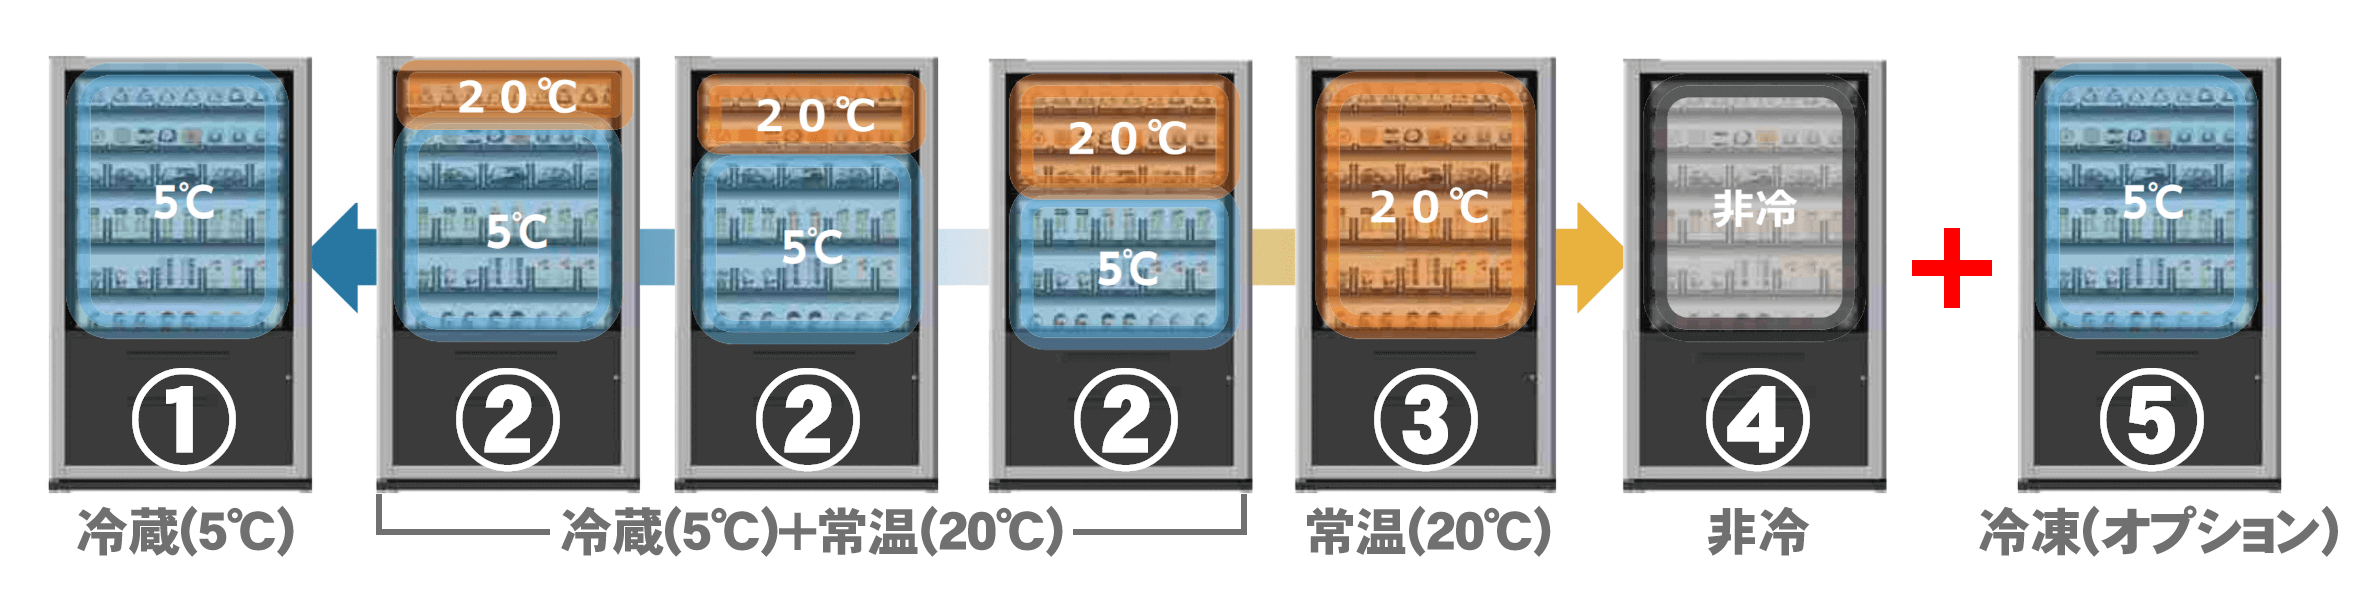 4つの温度設定と管理が可能、オプションで冷凍も対応